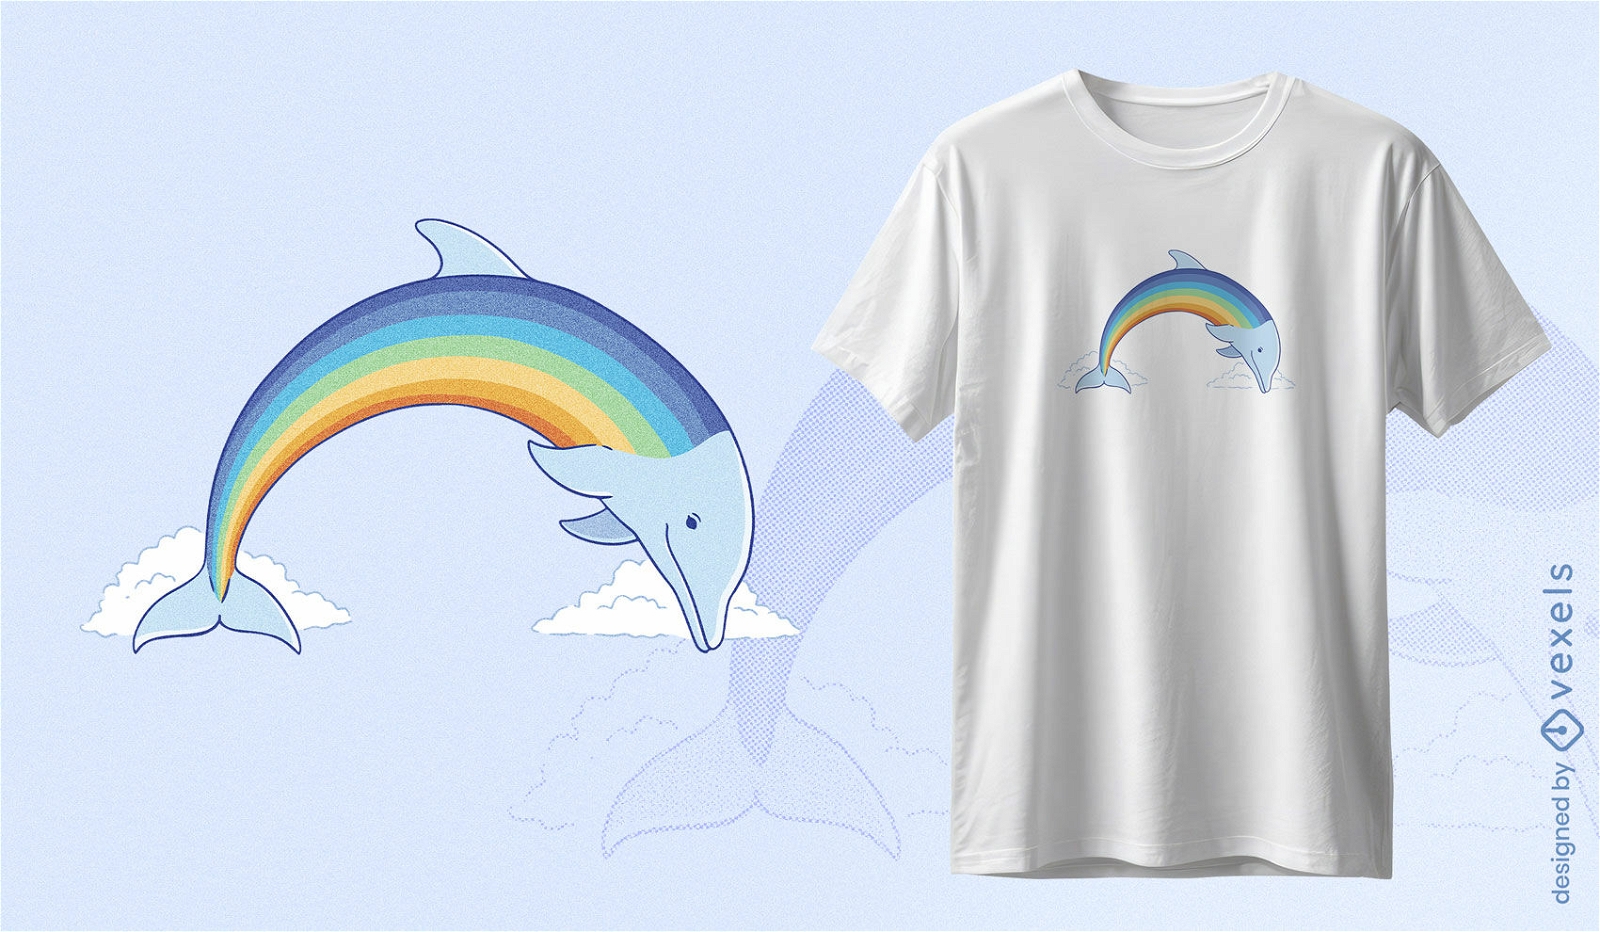 Dise?o de camiseta de delf?n arcoiris.